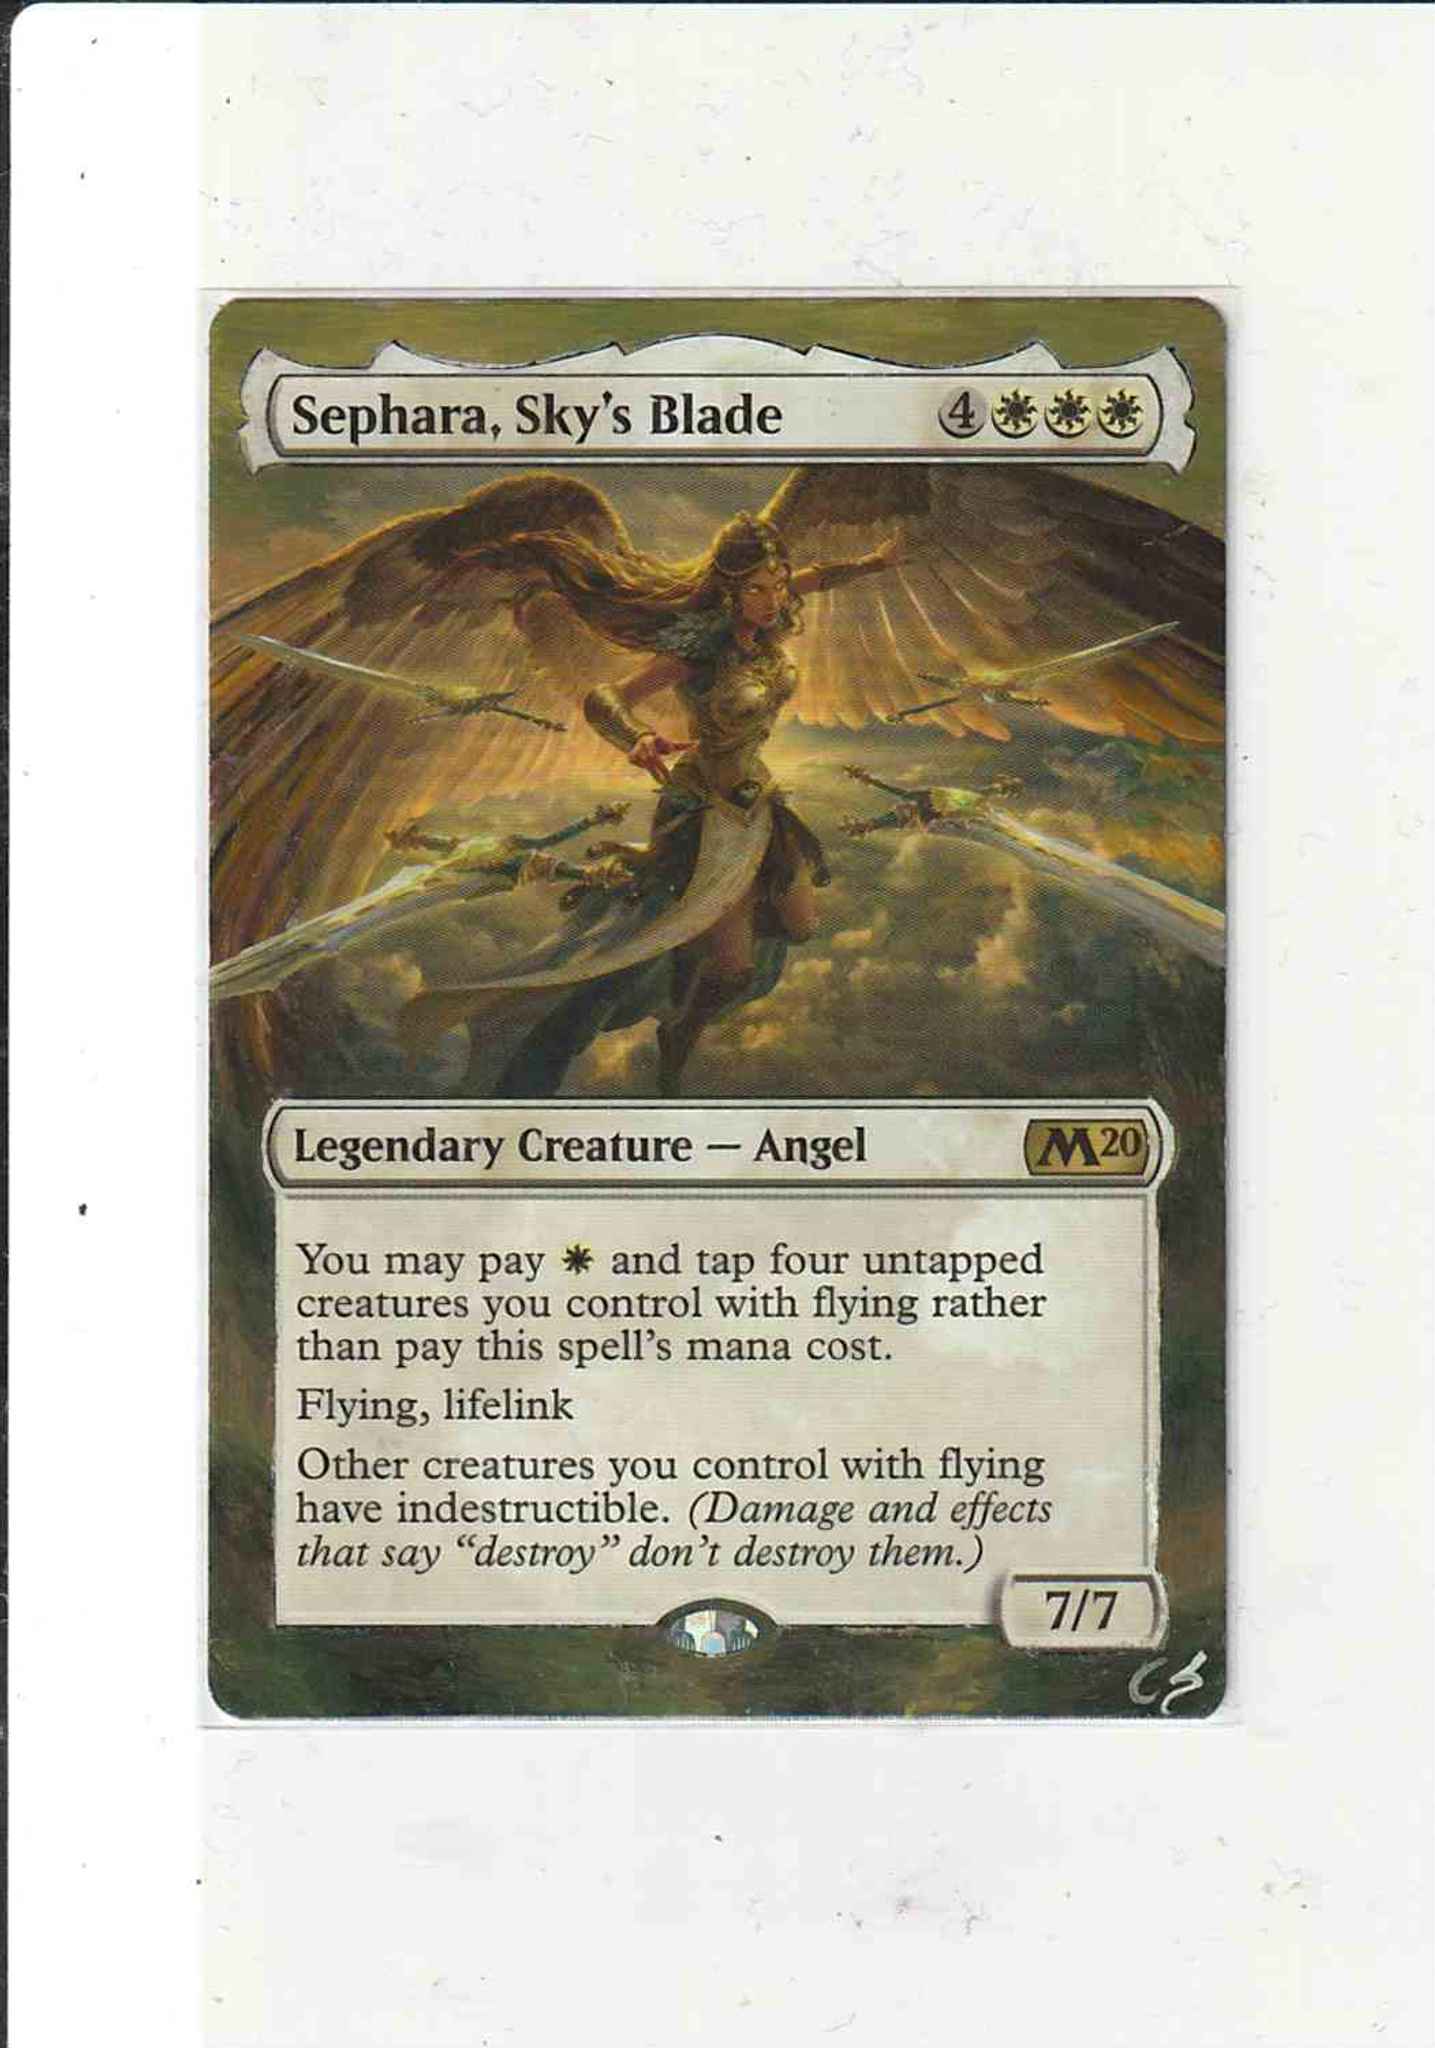 Sephara Sky's Blade